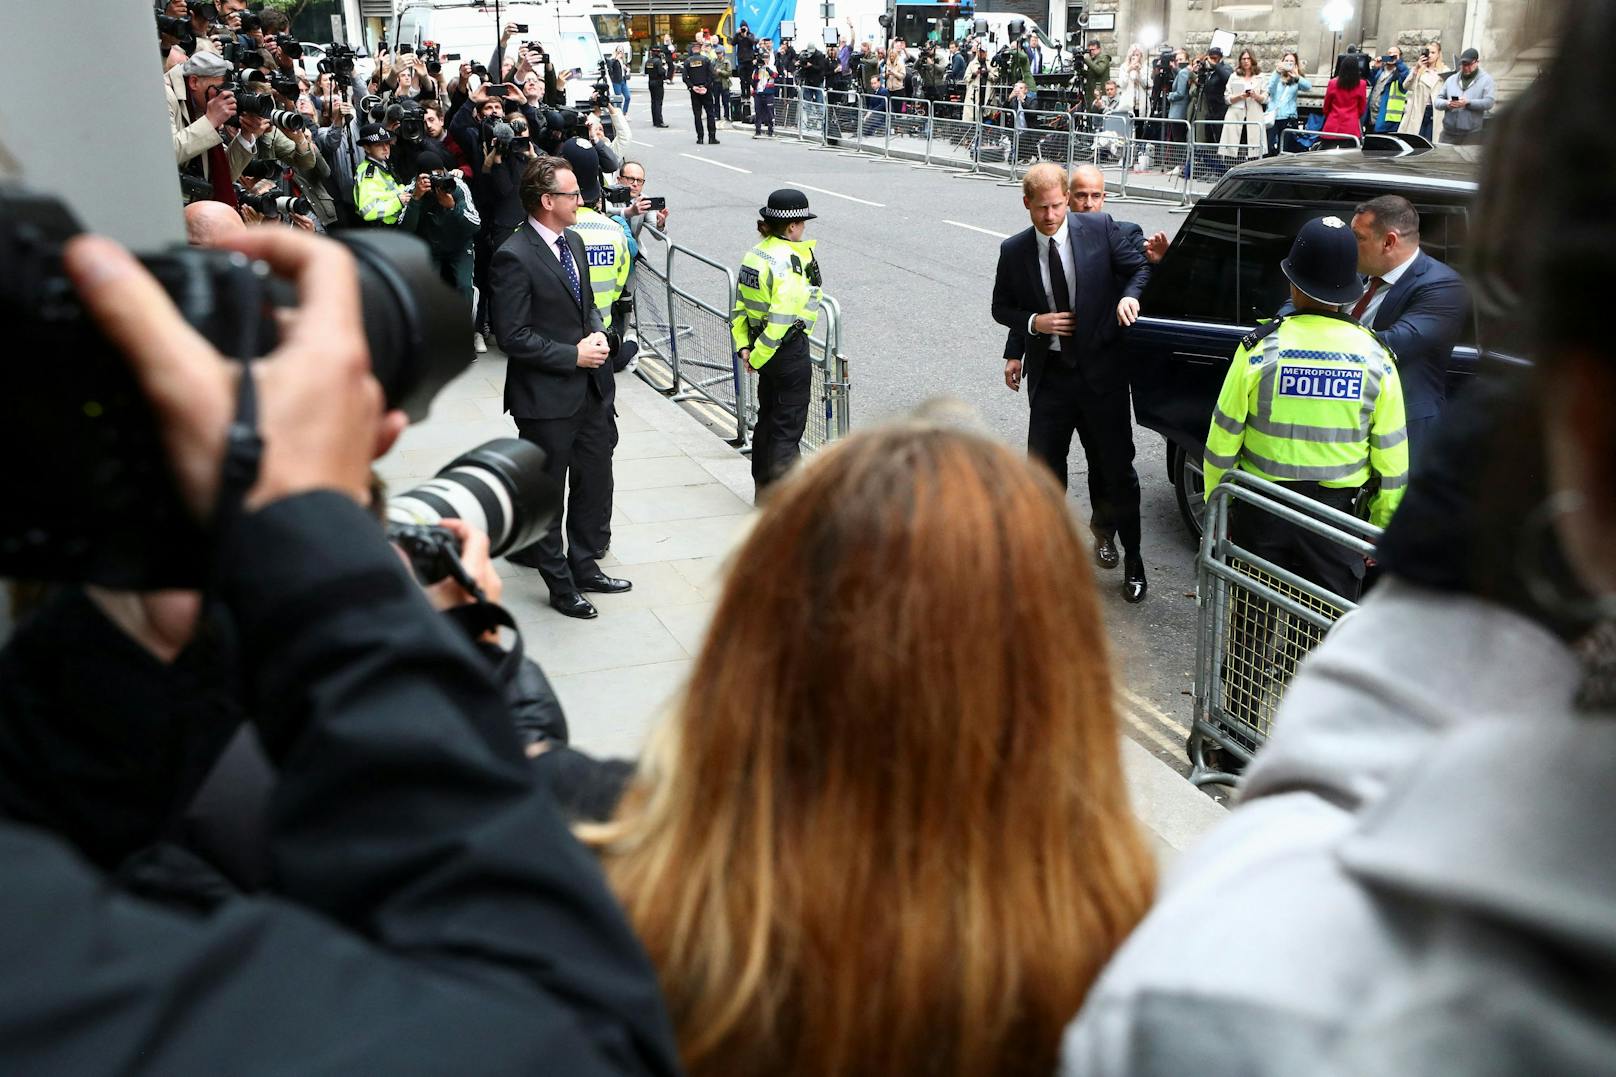 Prinz Harry bei seiner Ankunft vor Gericht. Vor Ort sammelt sich die internationale Presse sowie einige Privatpersonen, die einen Blick auf ihn erhaschen wollen.